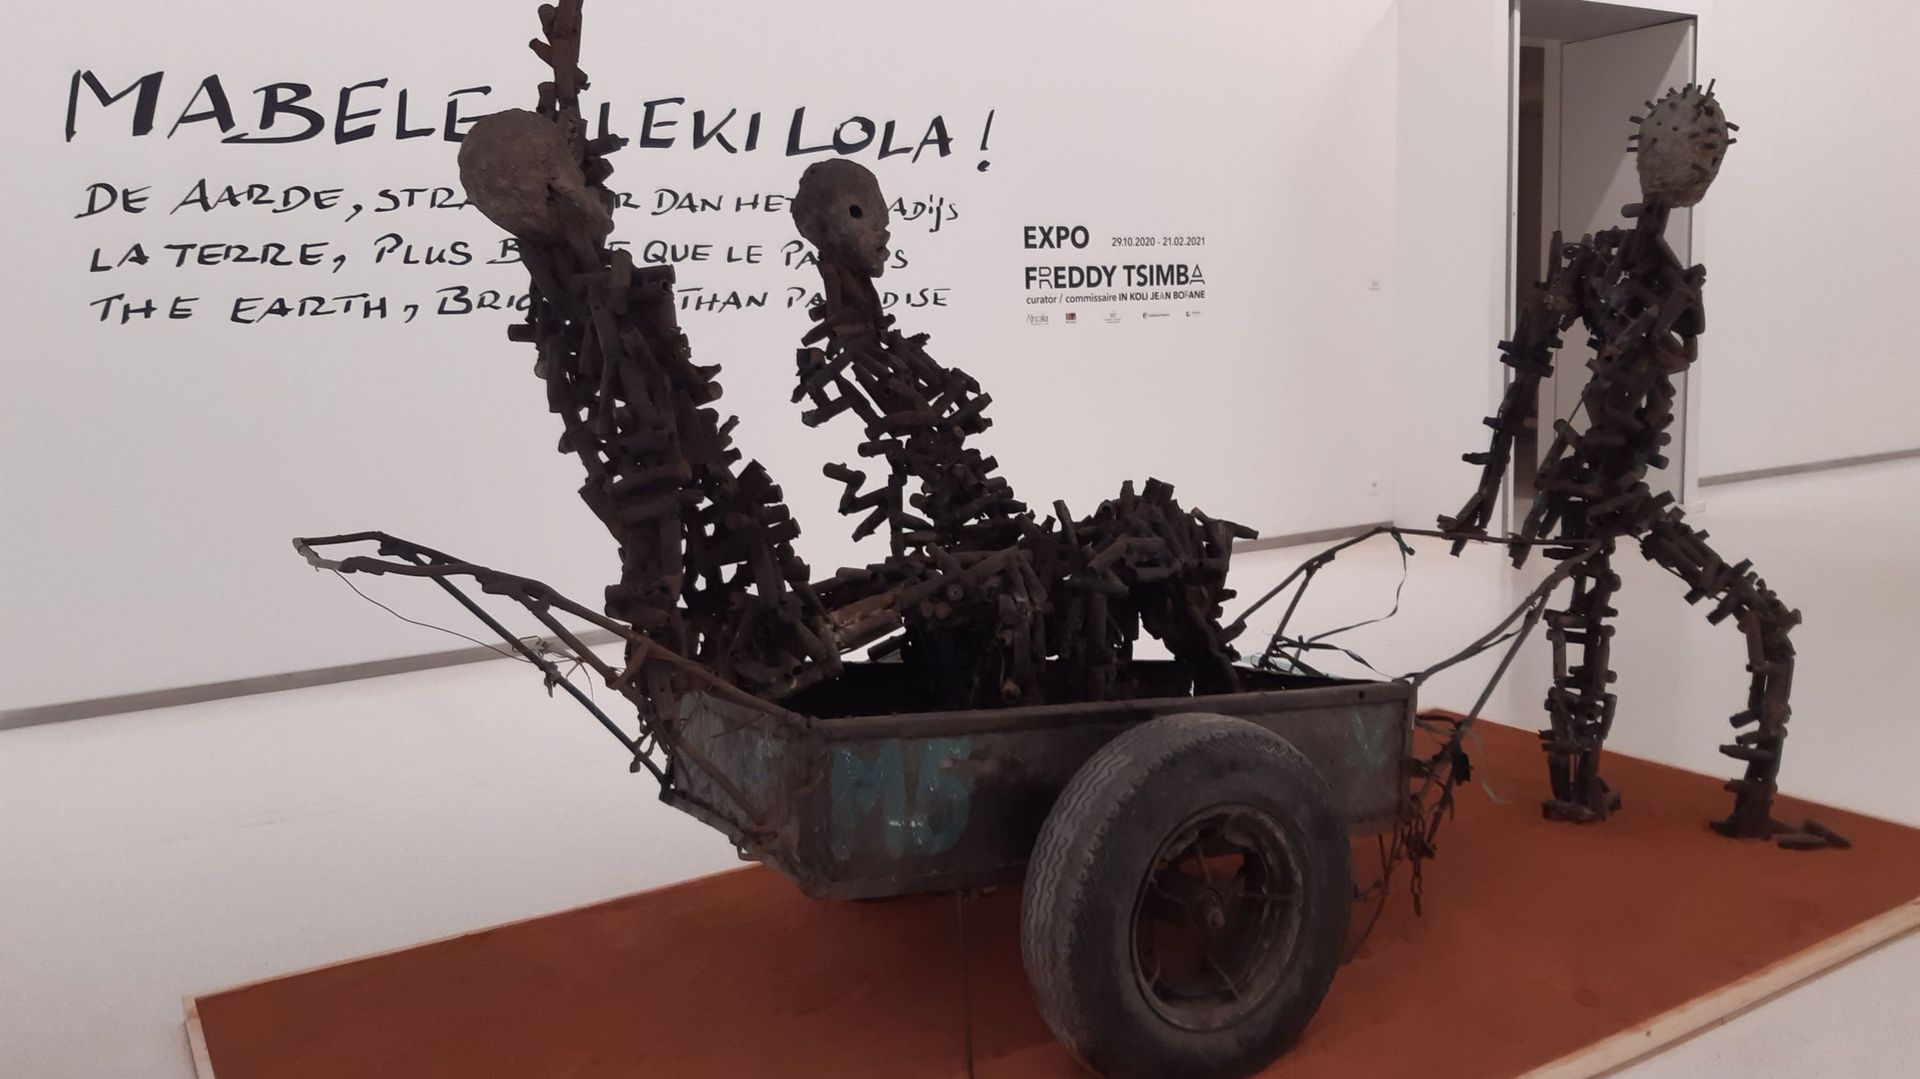 « Mabele Eleki Lola ! », les sculptures monumentales de Freddy Tsimba au Musée royal de l’Afrique centrale